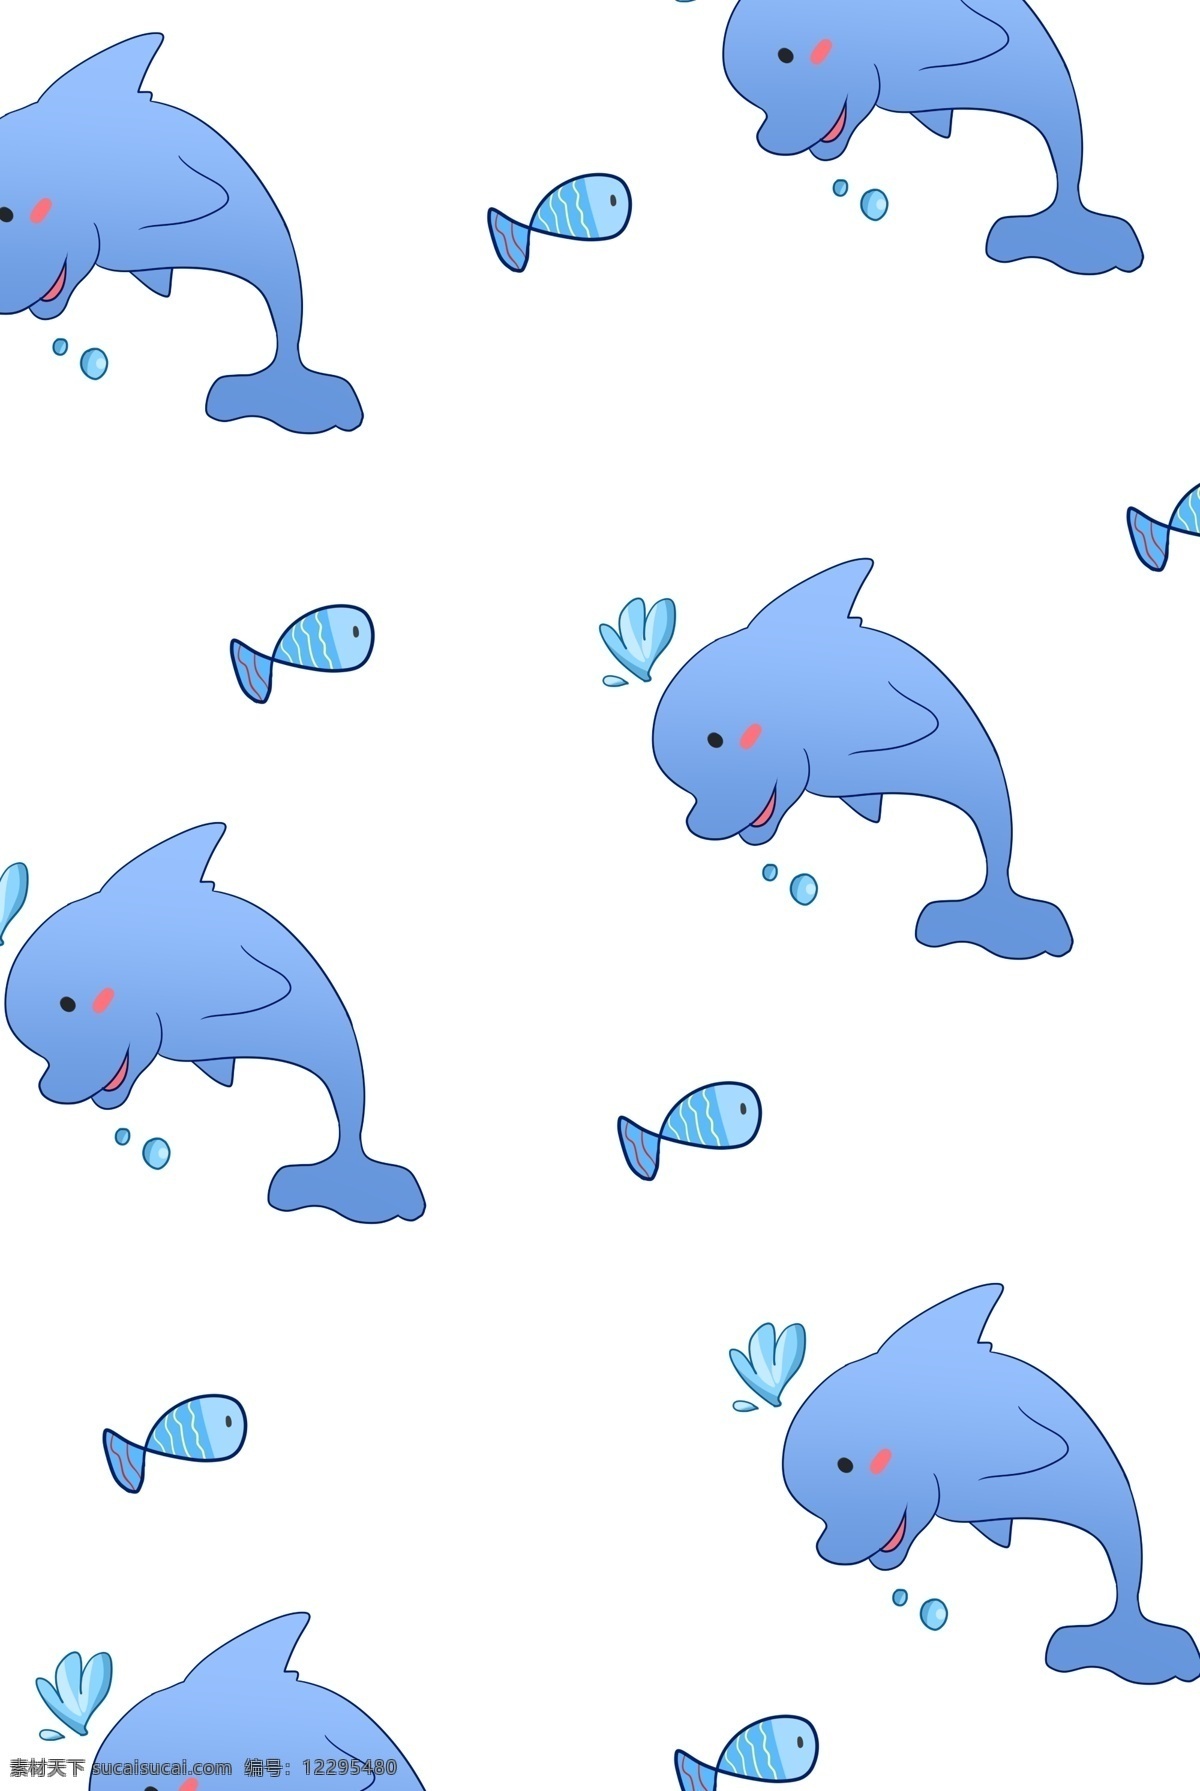 海豚 底纹 手绘 插画 蓝色的底纹 海豚底纹 创意海豚底纹 手绘海豚底纹 卡通海豚底纹 海豚底纹装饰